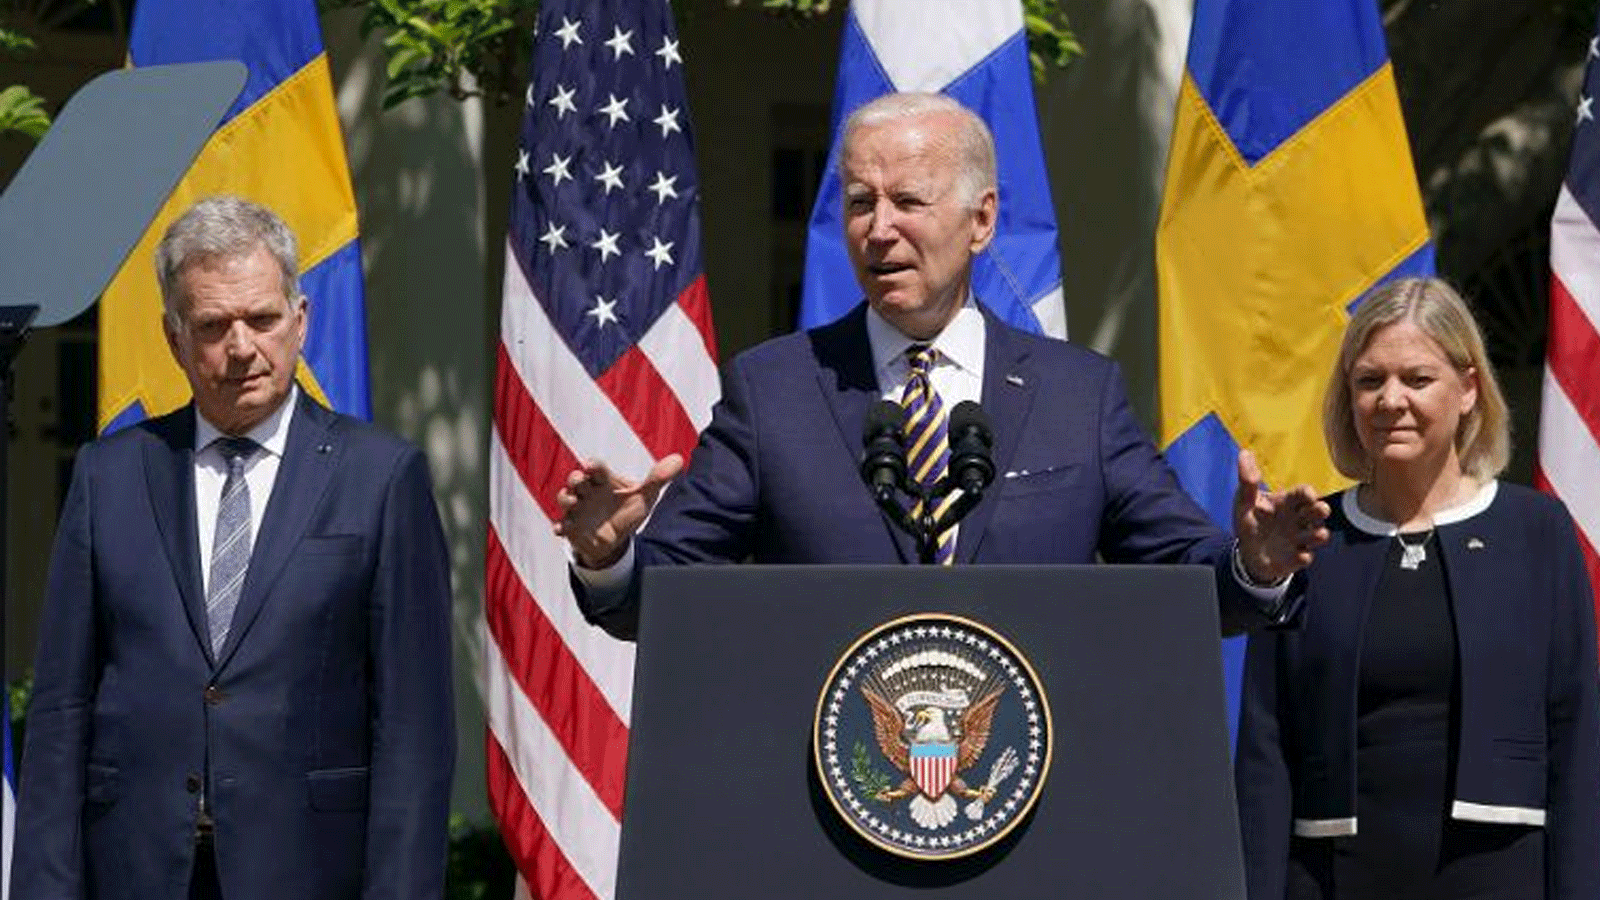  الرئيس الأمريكي جو بايدن، محاطًا برئيسة الوزراء السويدية ماغدالينا أندرسون ورئيس فنلندا سولي نينيستو، وهو يتحدث في حديقة الورود بعد اجتماع في البيت الأبيض في واشنطن العاصمة. 19 أيار\مايو 2022.